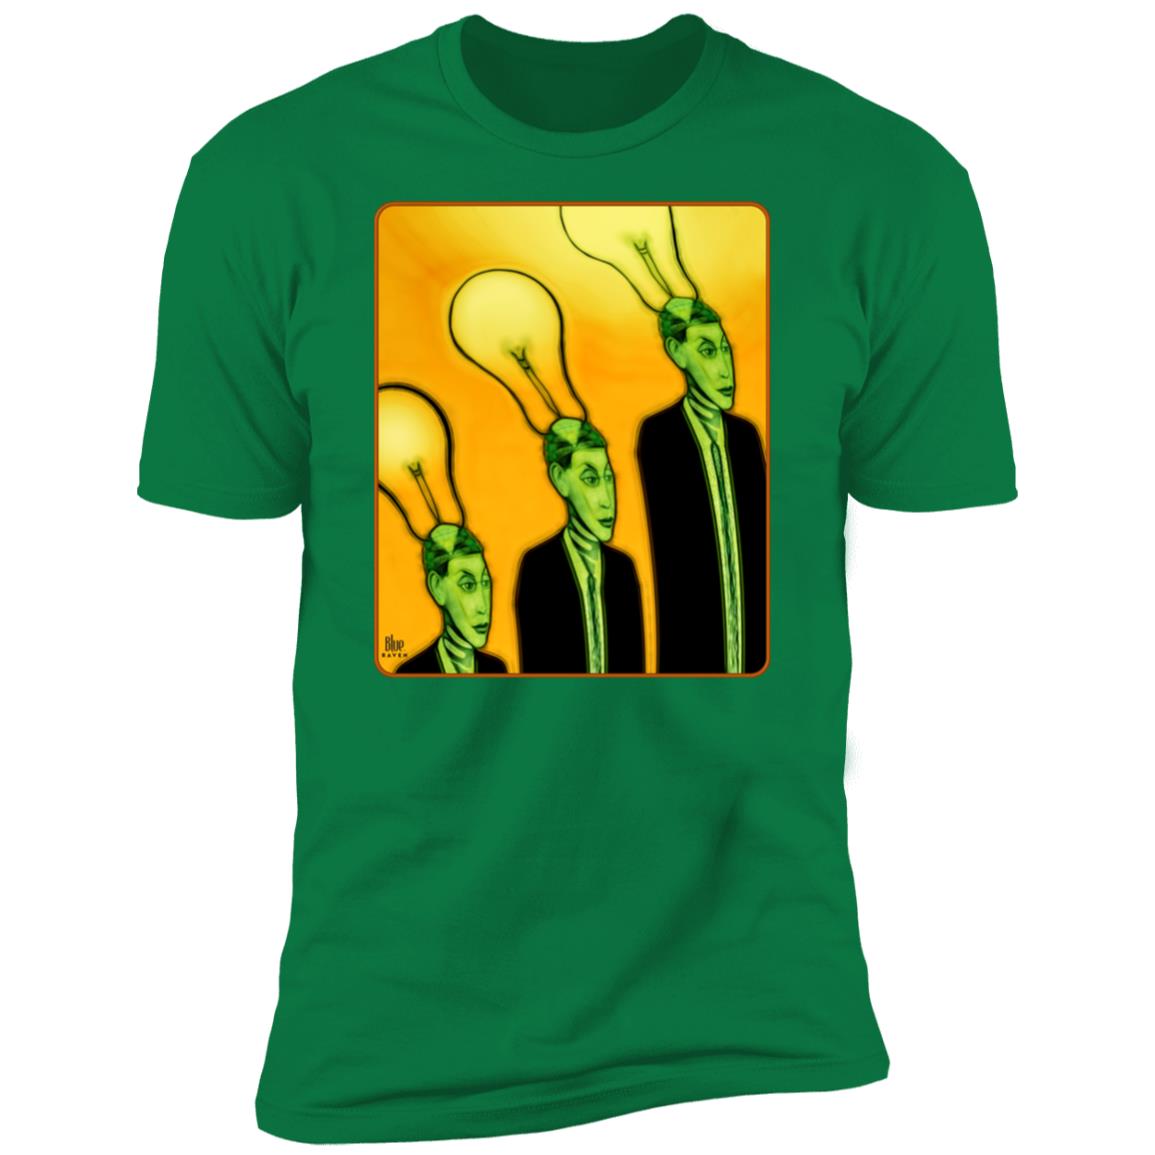 Brighter Idea - Men's Premium Fitted T-Shirt